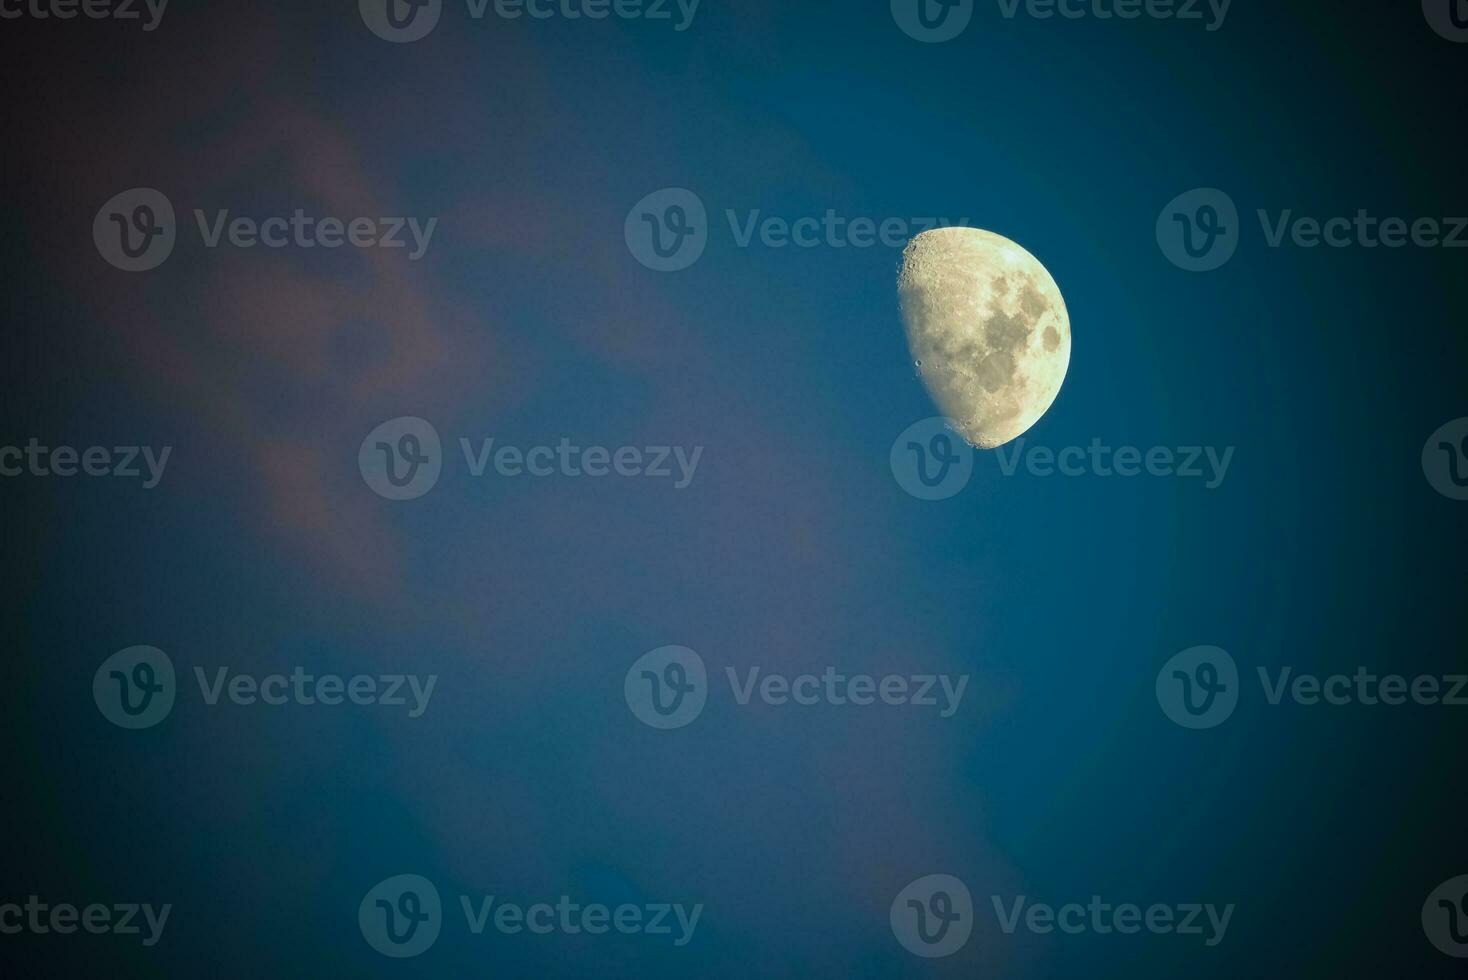 Luna en un cielo con nubes,patagonia argentina foto